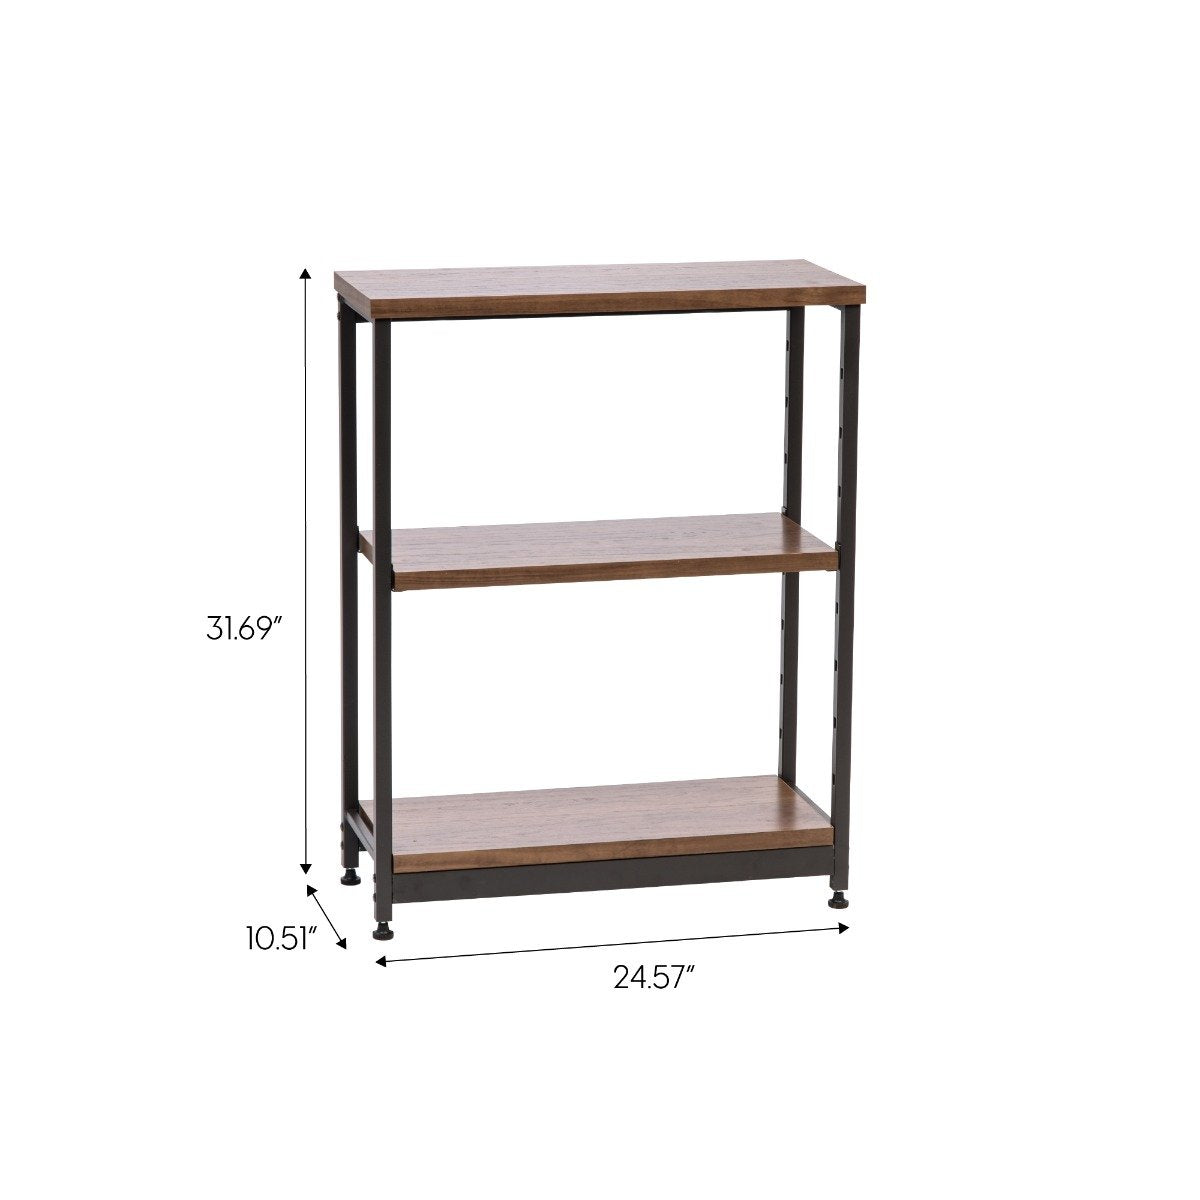 StoreSmith 3-Tier Wood/Metal Rack